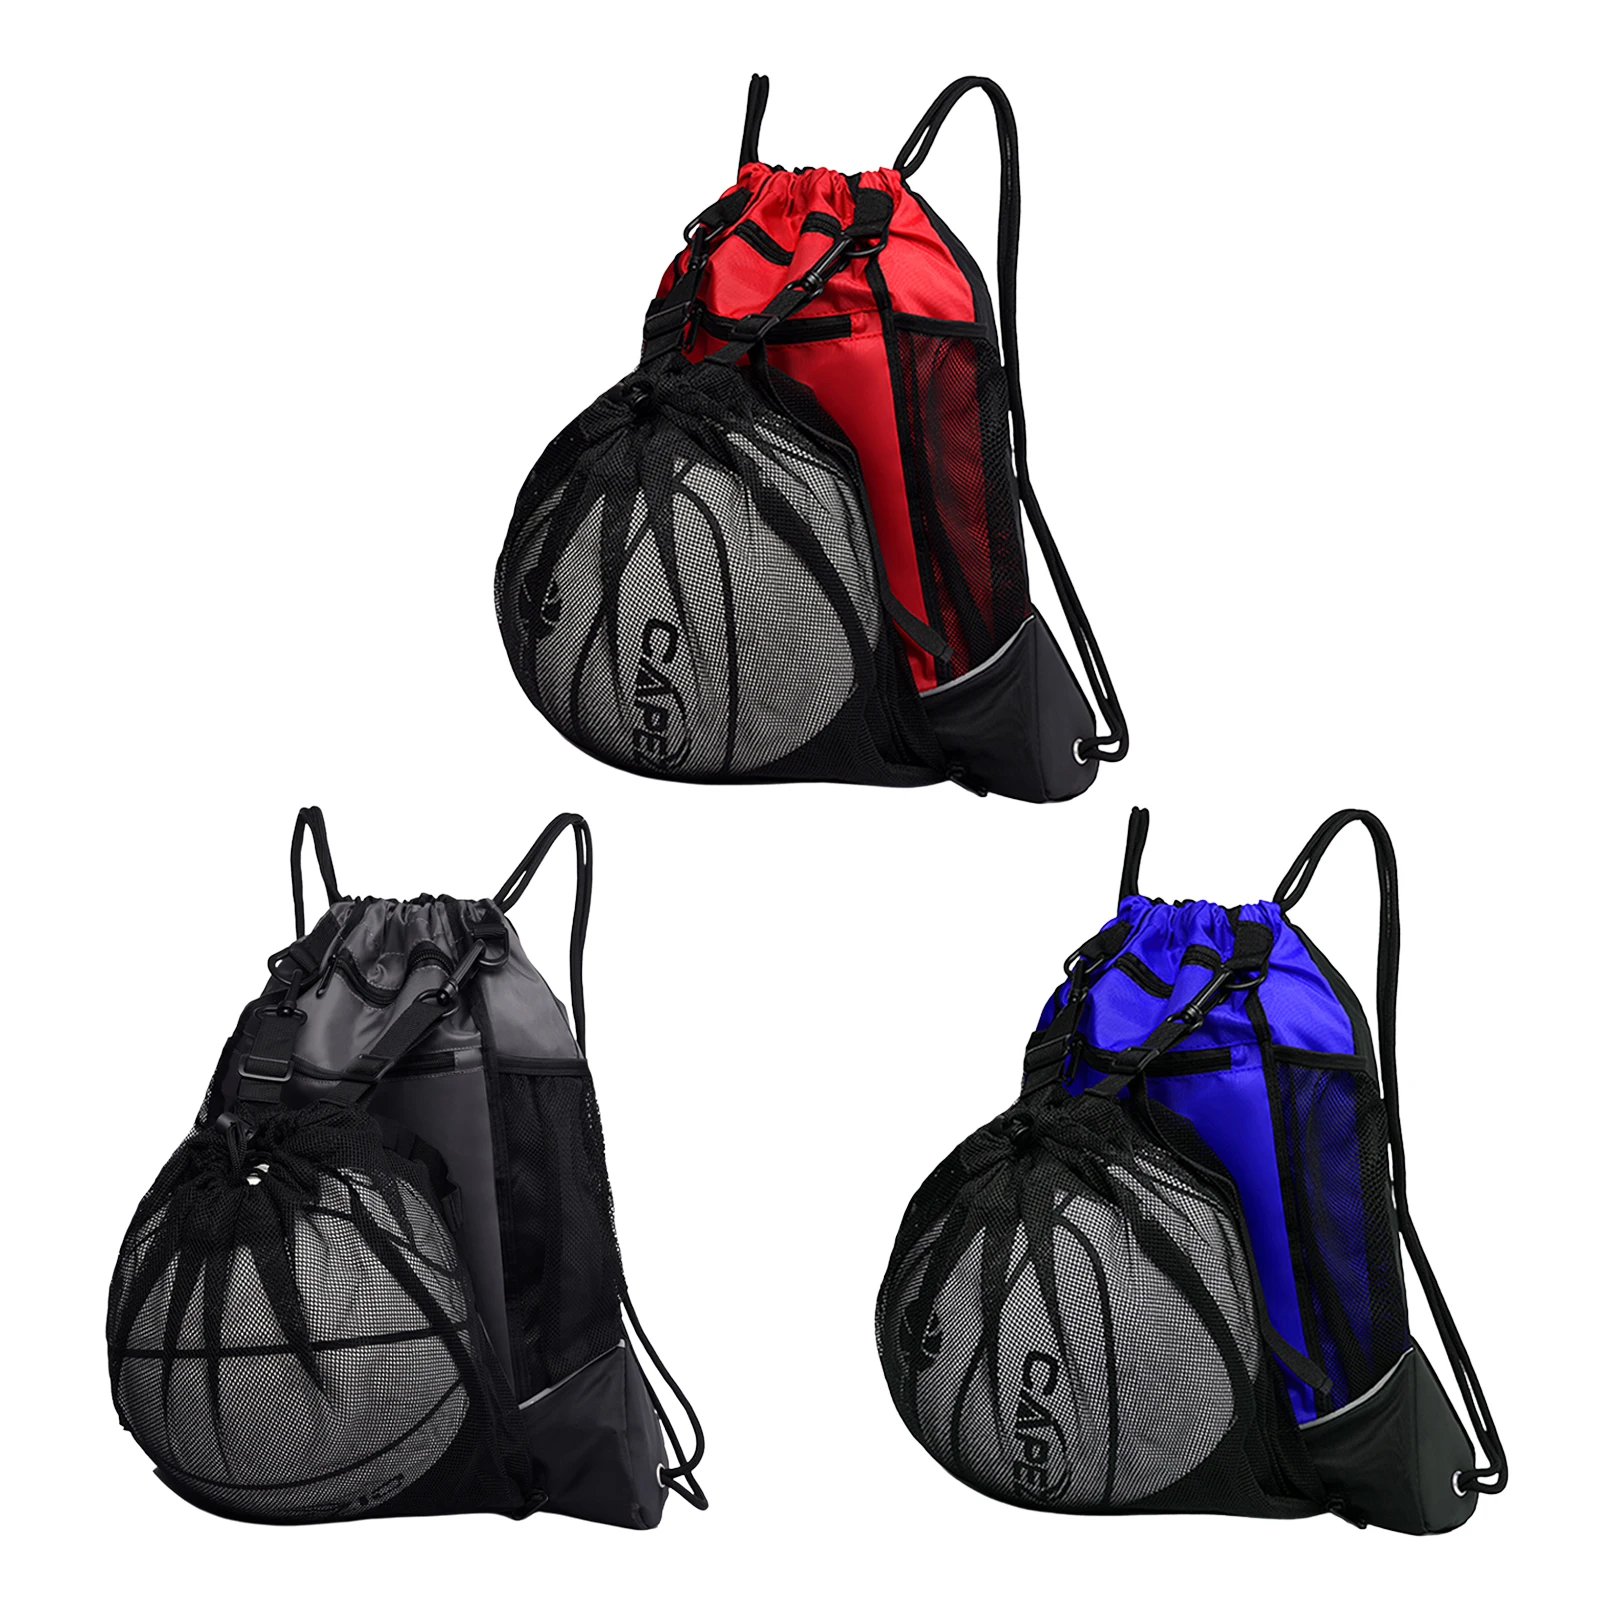 İpli Su Geçirmez Basketbol Sırt Çantası Taşınabilir Sırt Çantası spor çanta Ayrılabilir Topu Örgü Çanta Gizli Örgü Çanta Seyahat Çantası